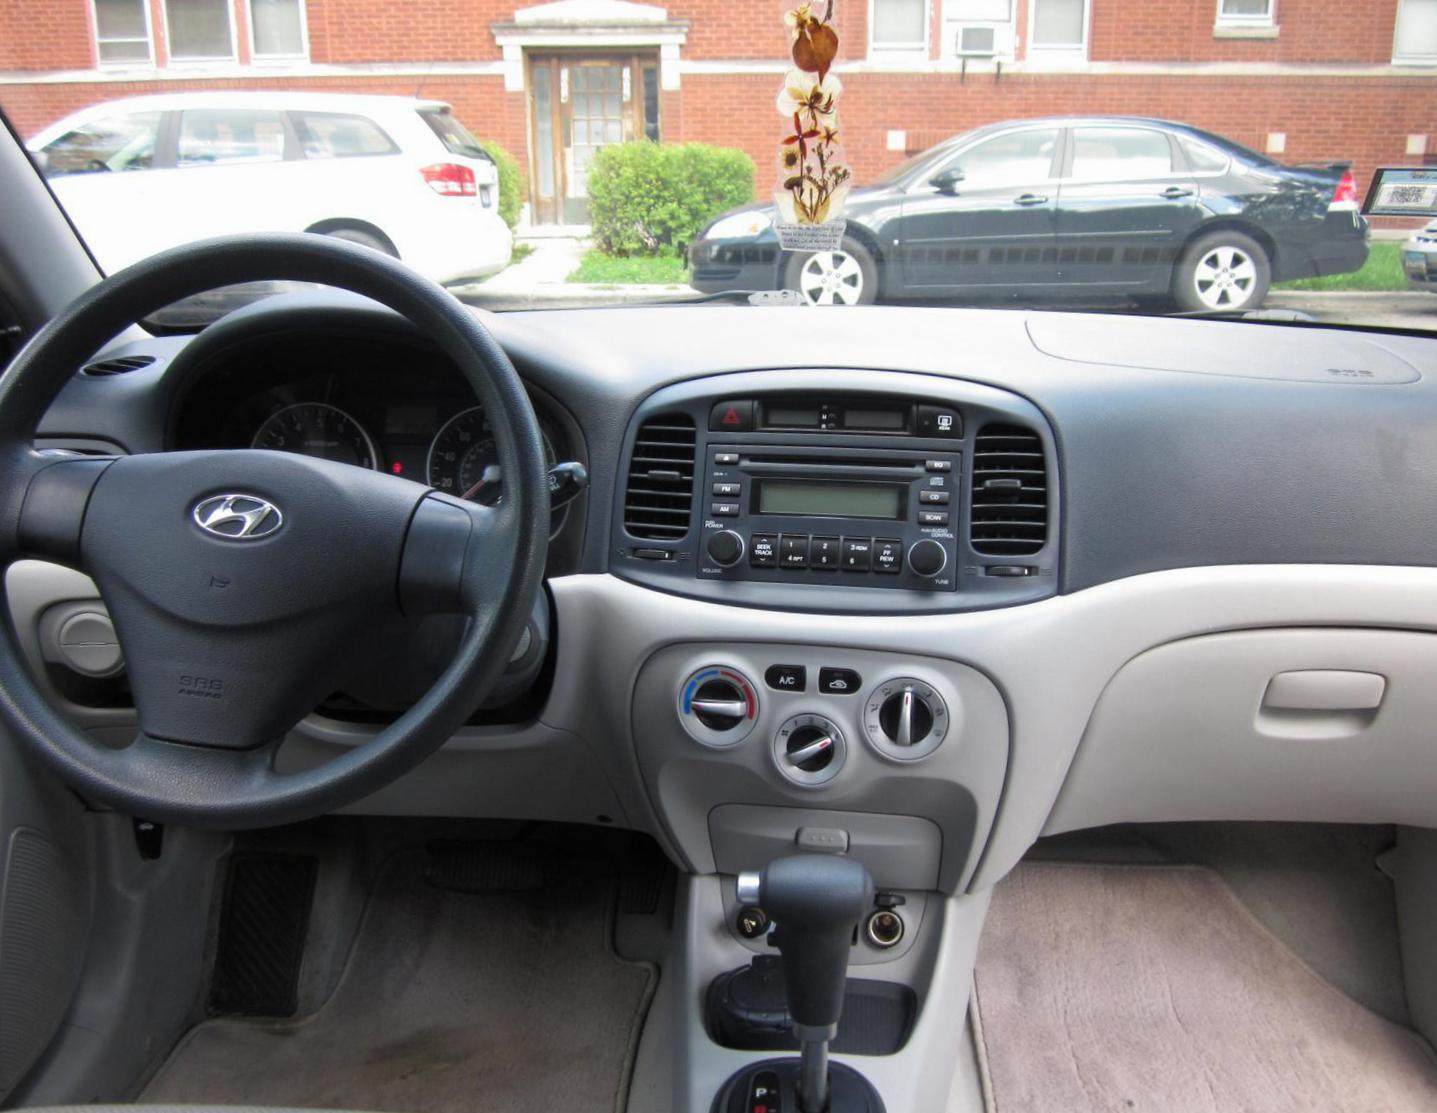 Hyundai Accent review minivan